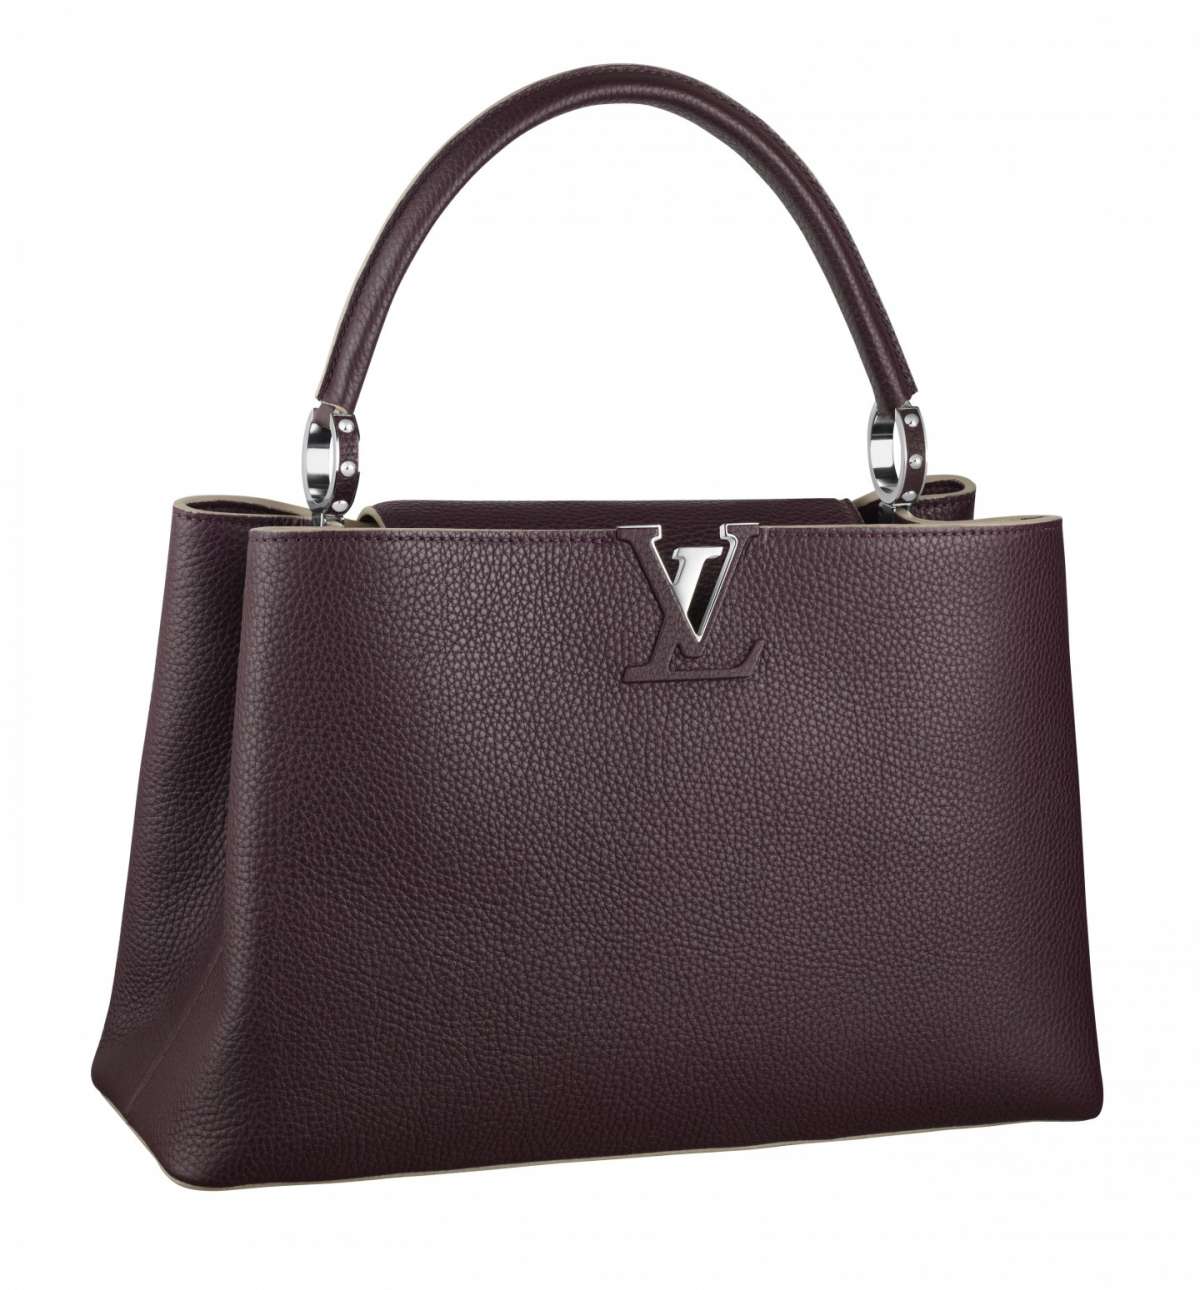 Handbag marrone scuro Louis Vuitton